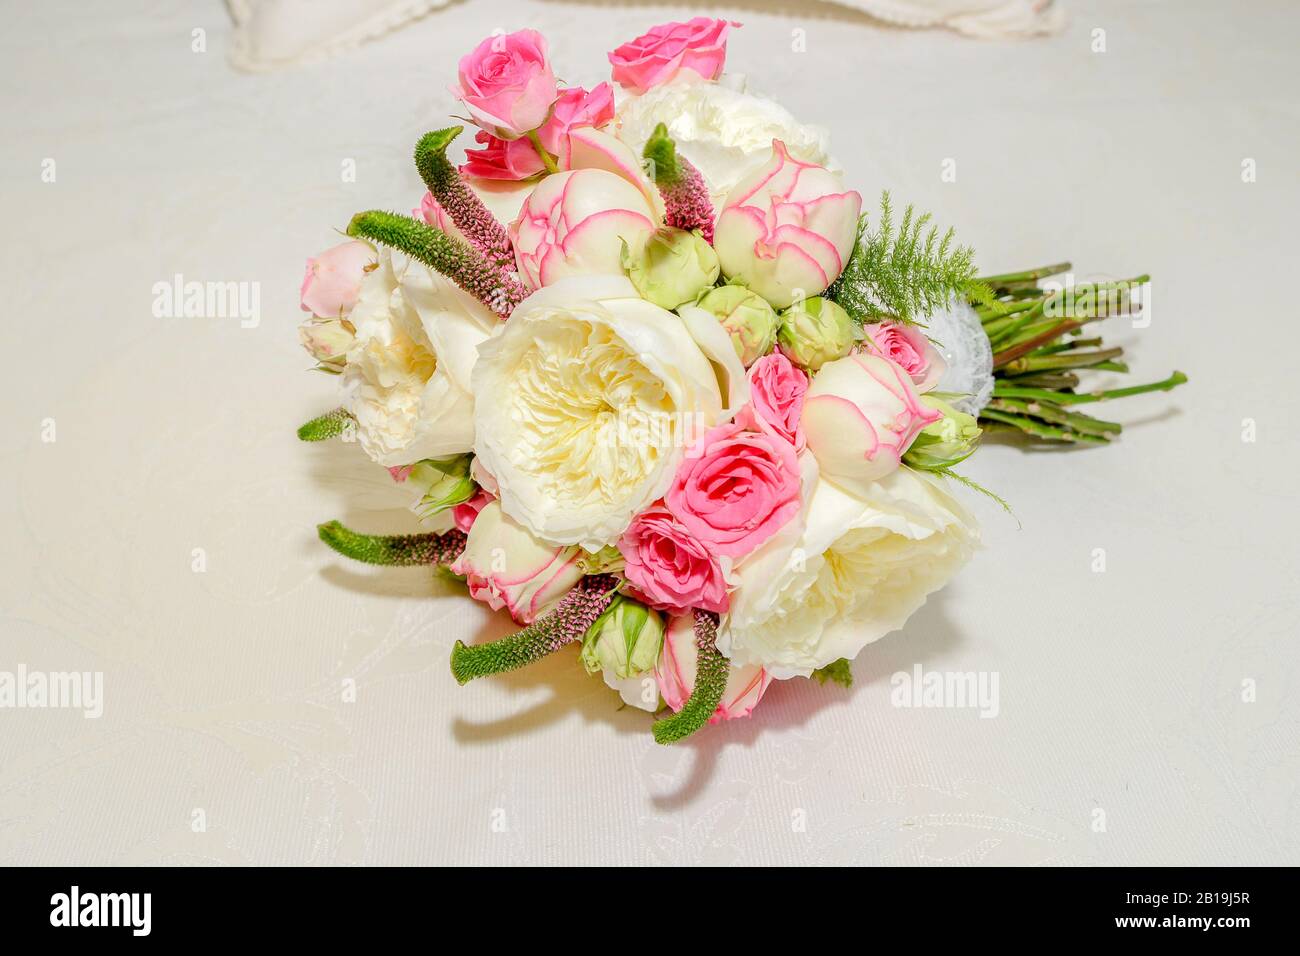 Ramo de rosas y peonías, rosa y blanco. Rosa × damascena,Rosa Desdemona,Paeoniaceae. Rosa Julieta. Foto de stock